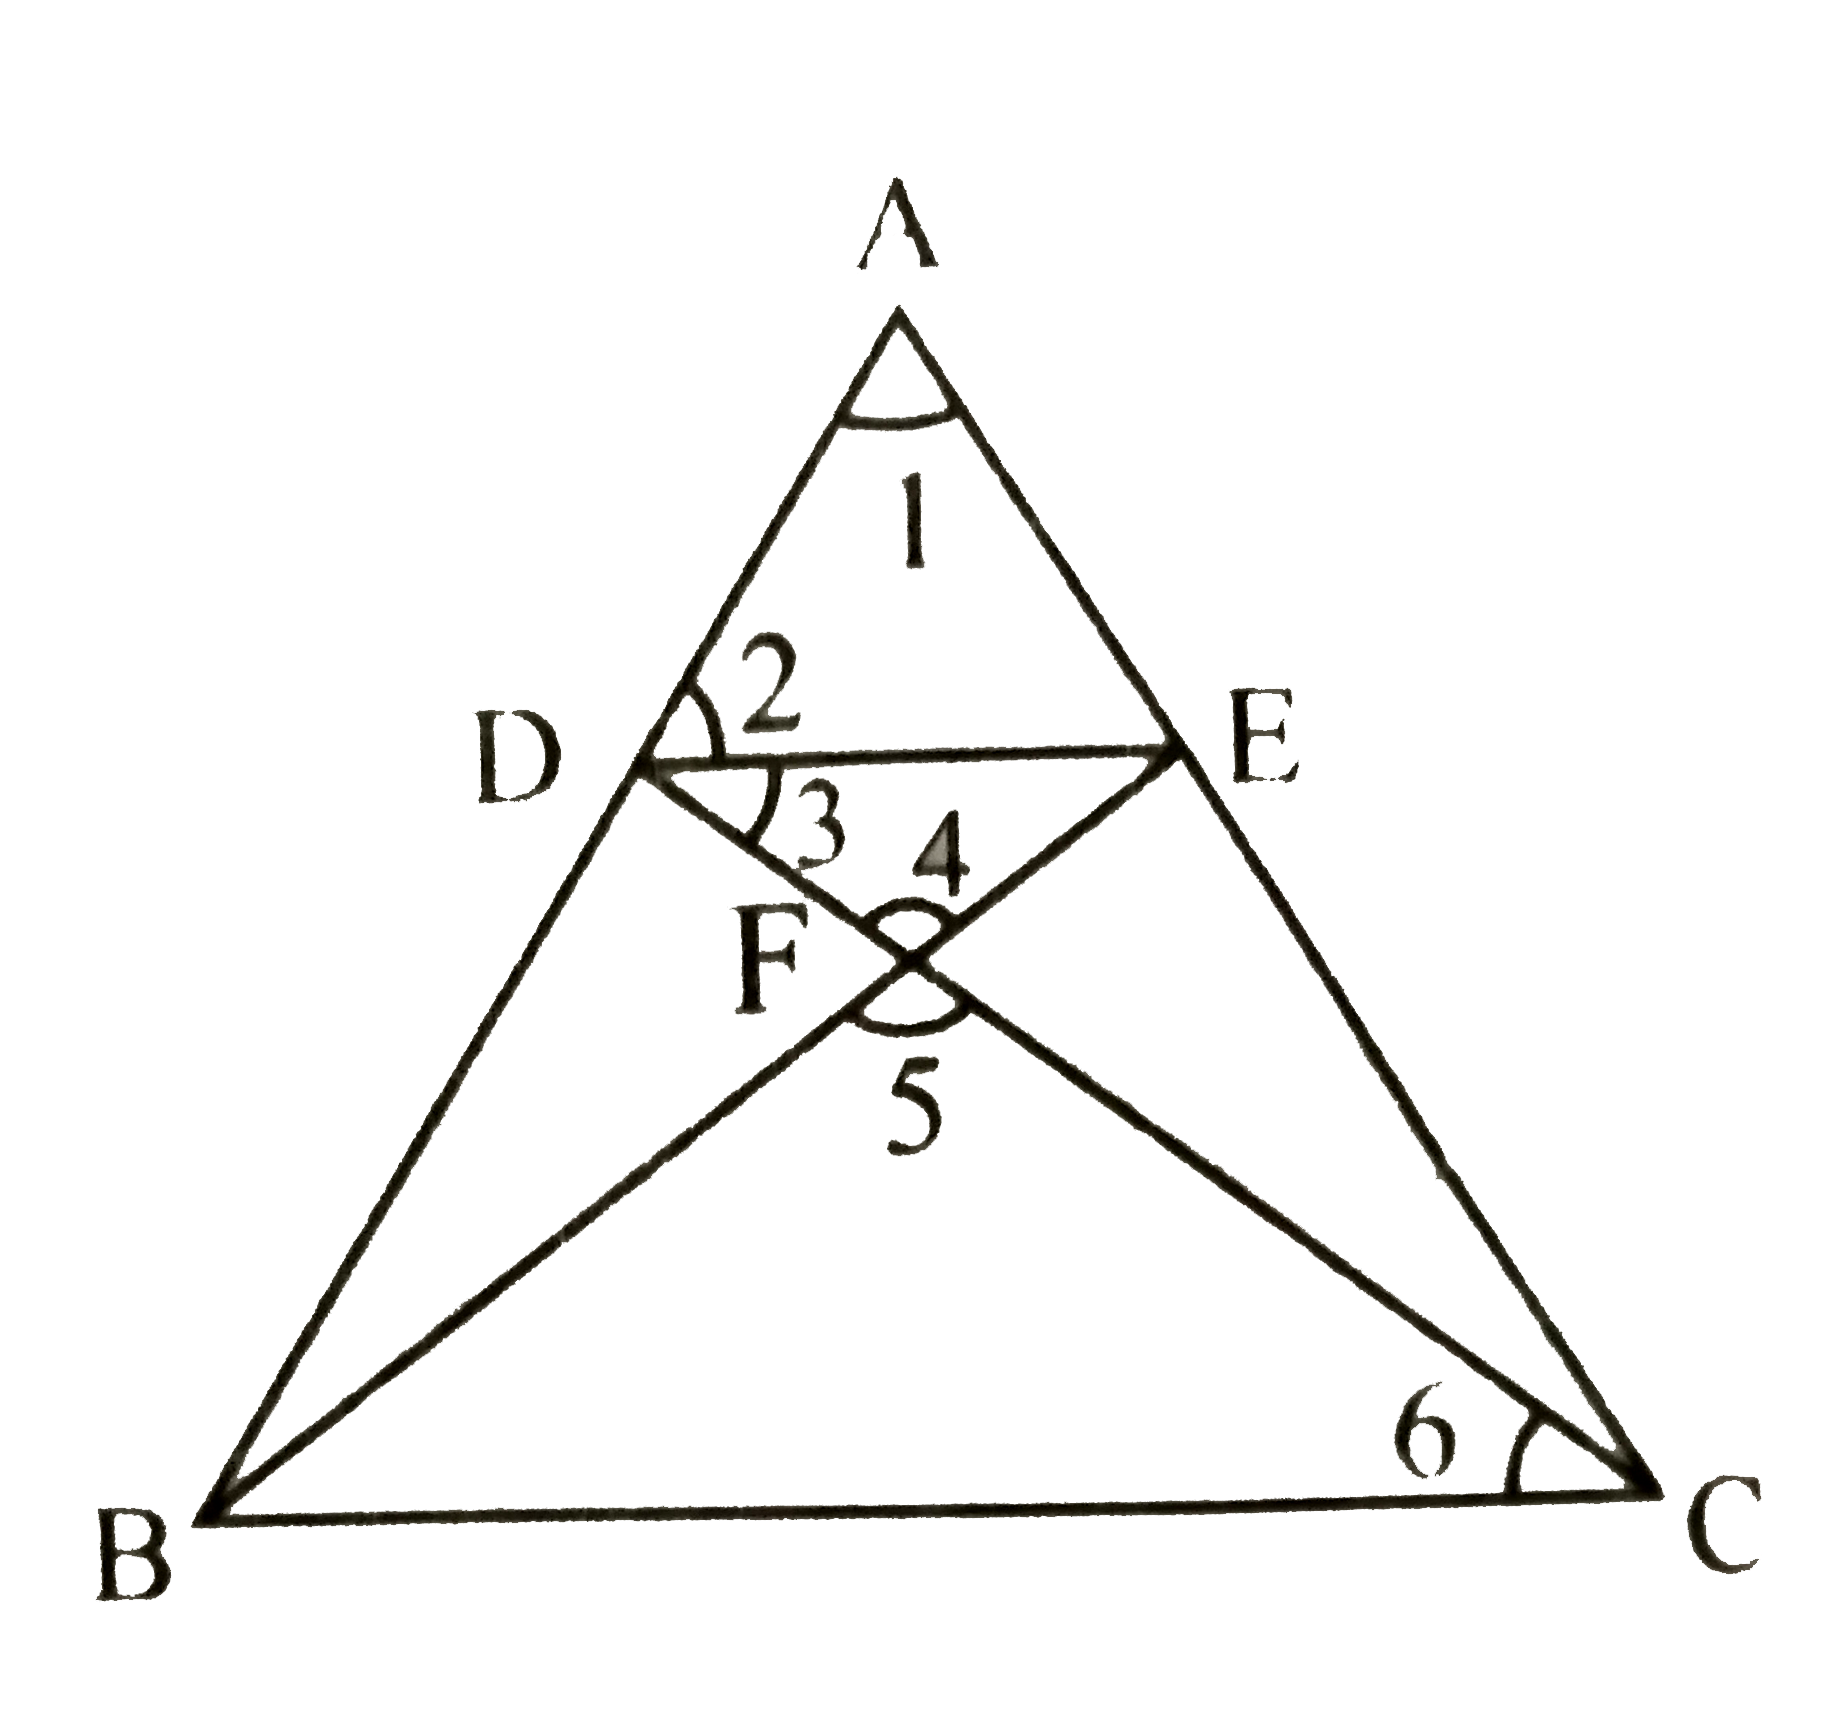 दिये गये चित्र में , DE ||BC तथा AD : DB = 7 :5 है तो  (ar (triangle DEF))/(ar (triangle CFB))   ज्ञात कीजिए |